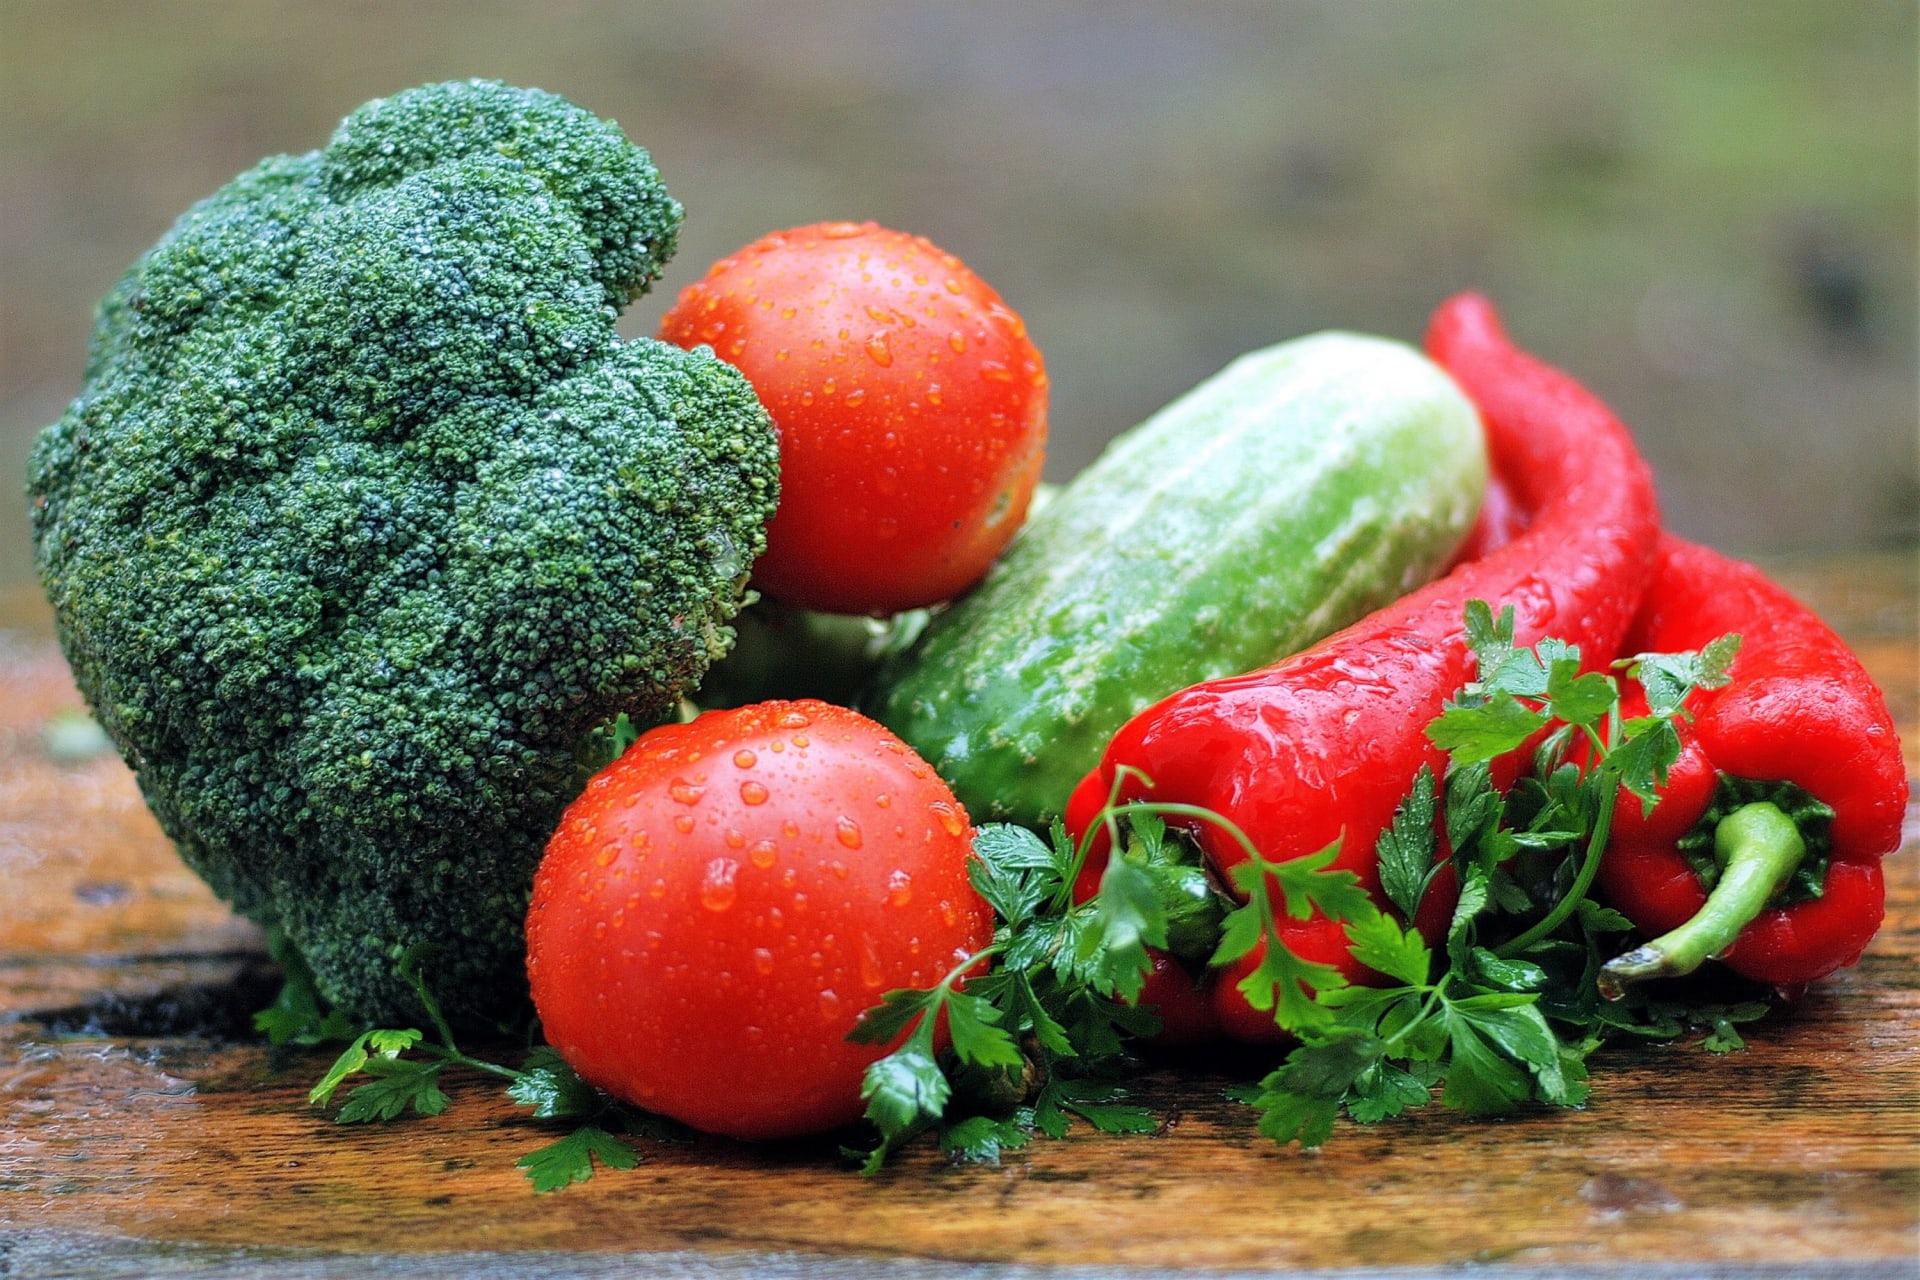 Jak léčit kocovinu: ztracené vitaminy a minerály spolehlivě pomůže nahradit zelenina, například brokolice, rajčata, papriky, okurky, růžičková kapusta...